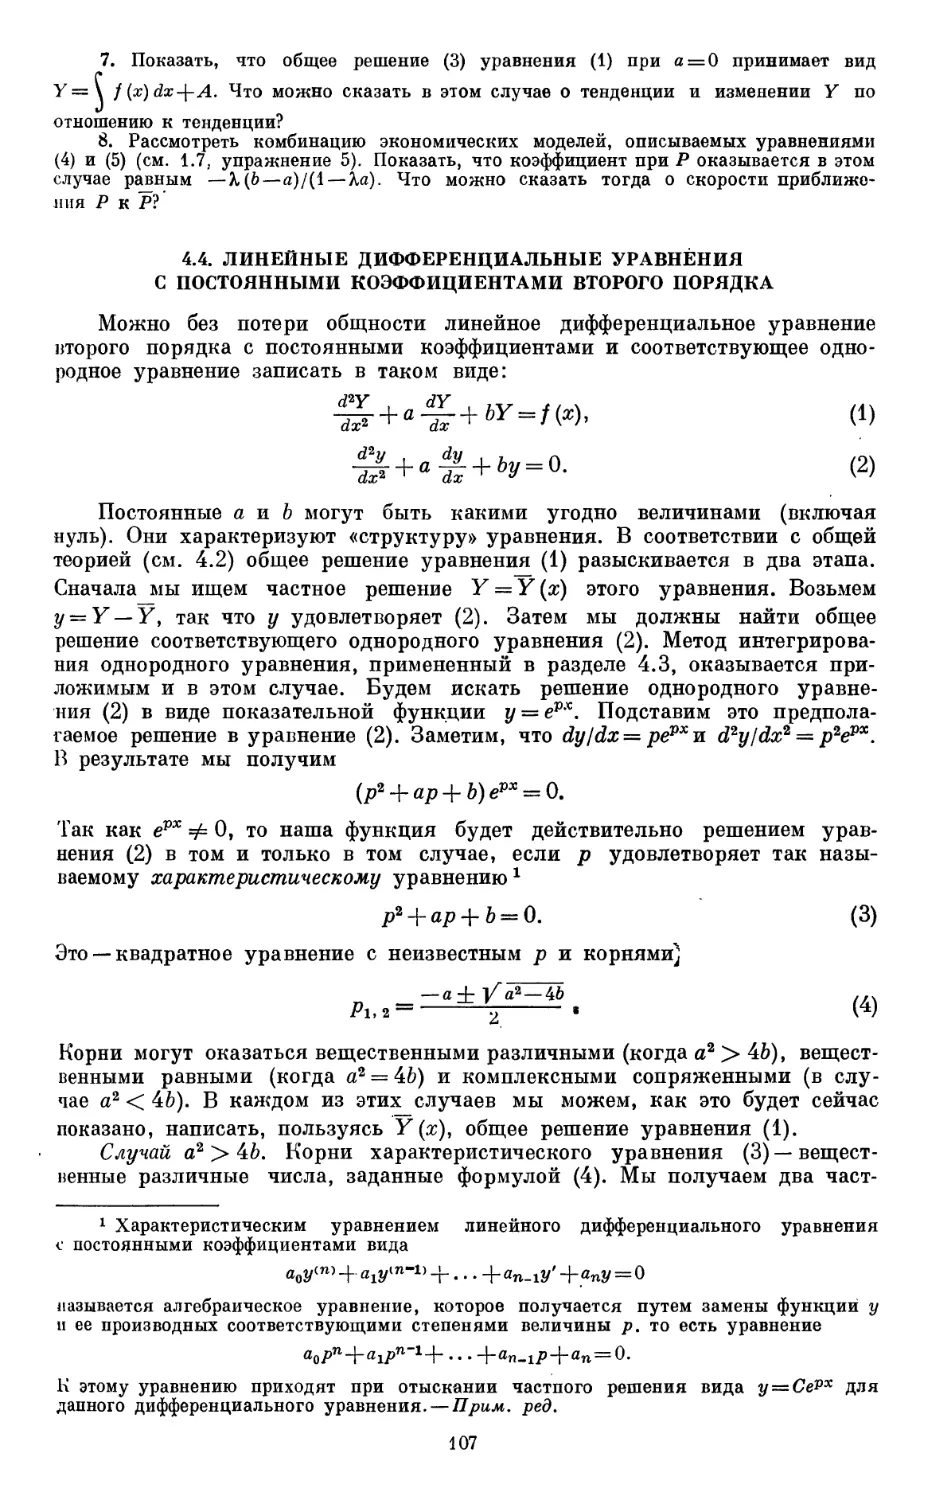 4.4. Линейные дифференциальные уравнения с постоянными коэффициентами второго порядка